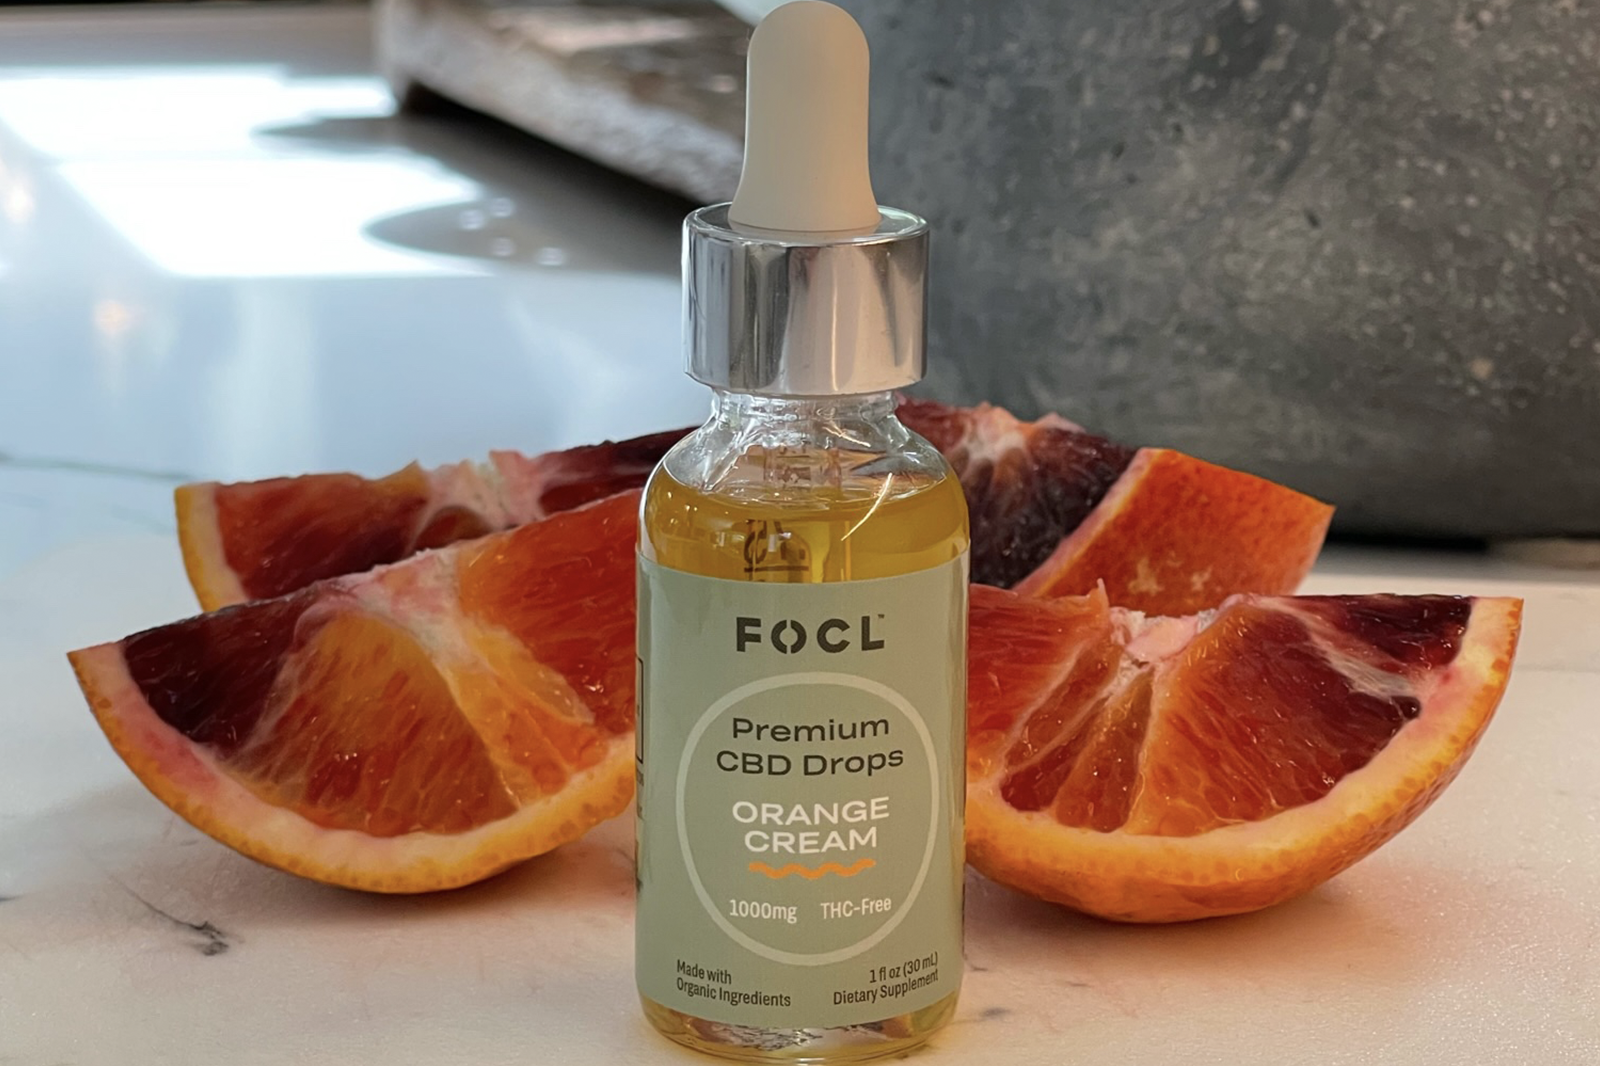 Bottle of FOCL's Orange Cream Premium CBD Drops next to orange slices.